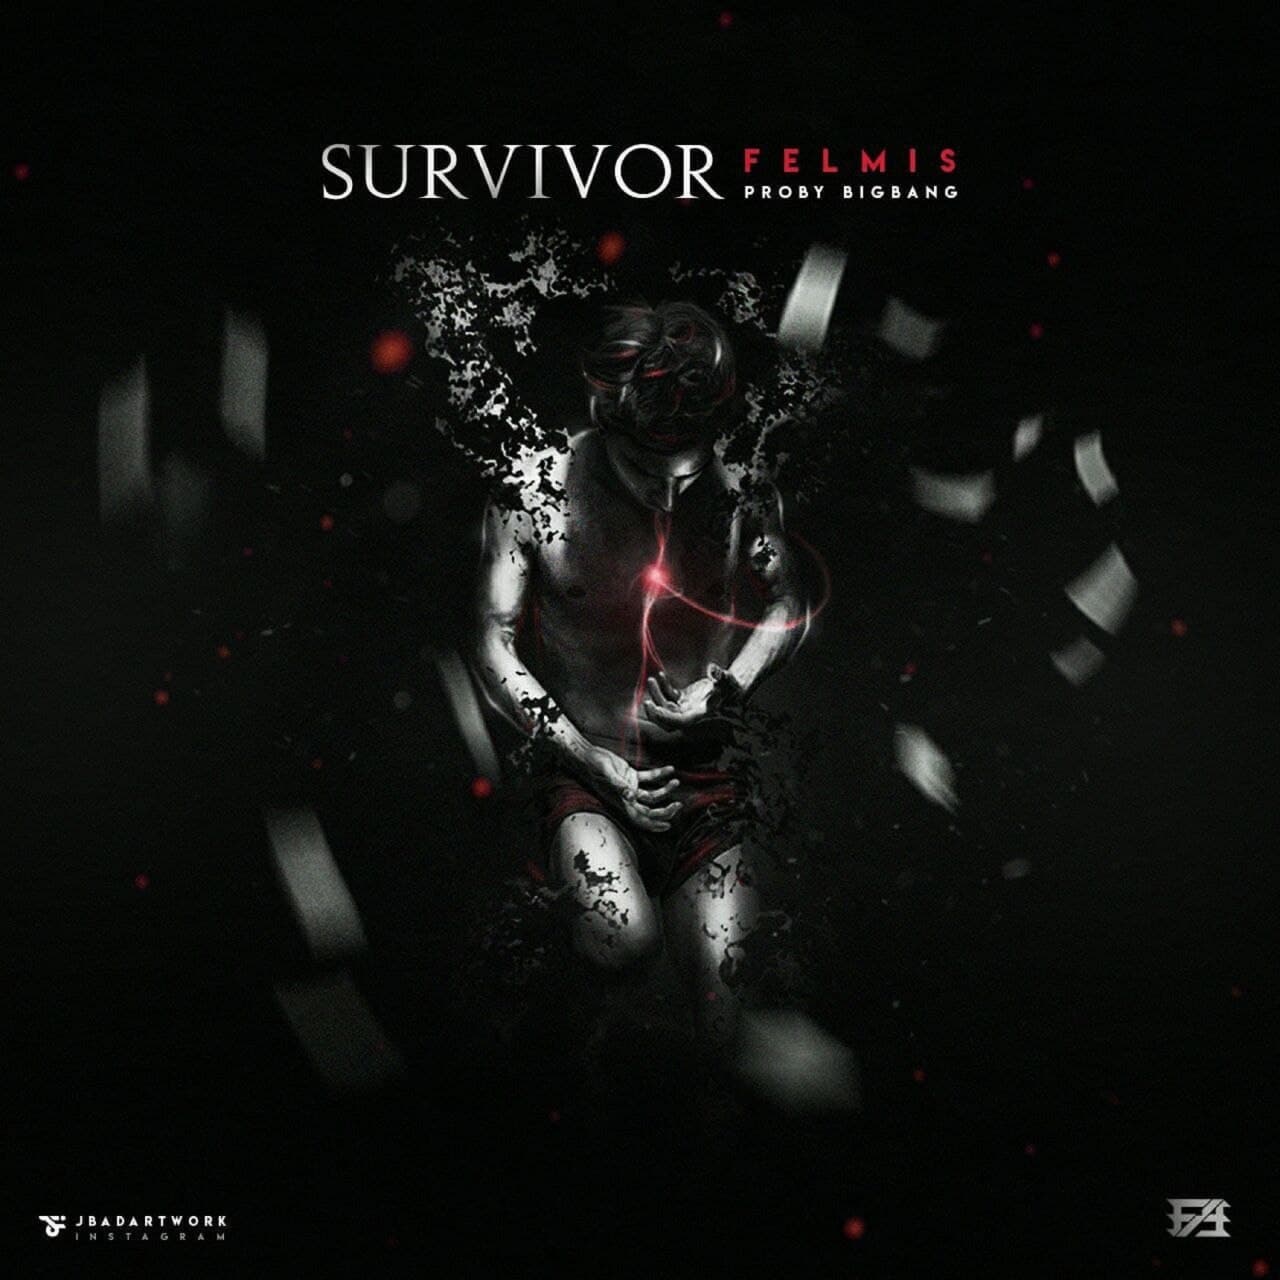  دانلود آهنگ جدید فلمیس - باز مانده | Download New Music By Felmis - Survivor